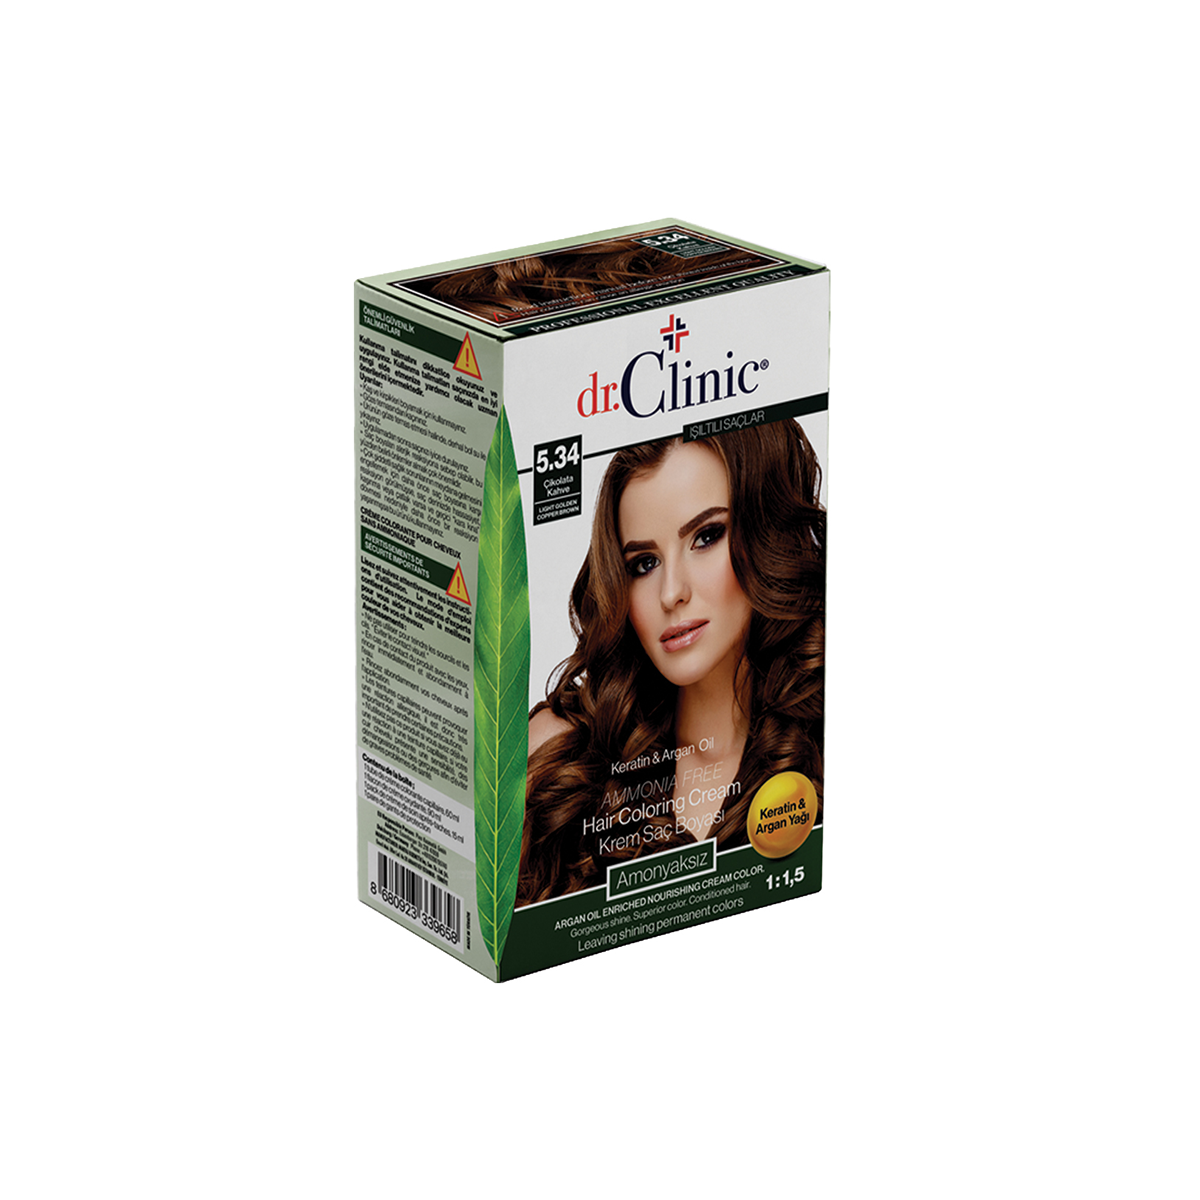 Dr.Clinic Saç Boyası Amonyaksız 5.34 Çikolata Kahve